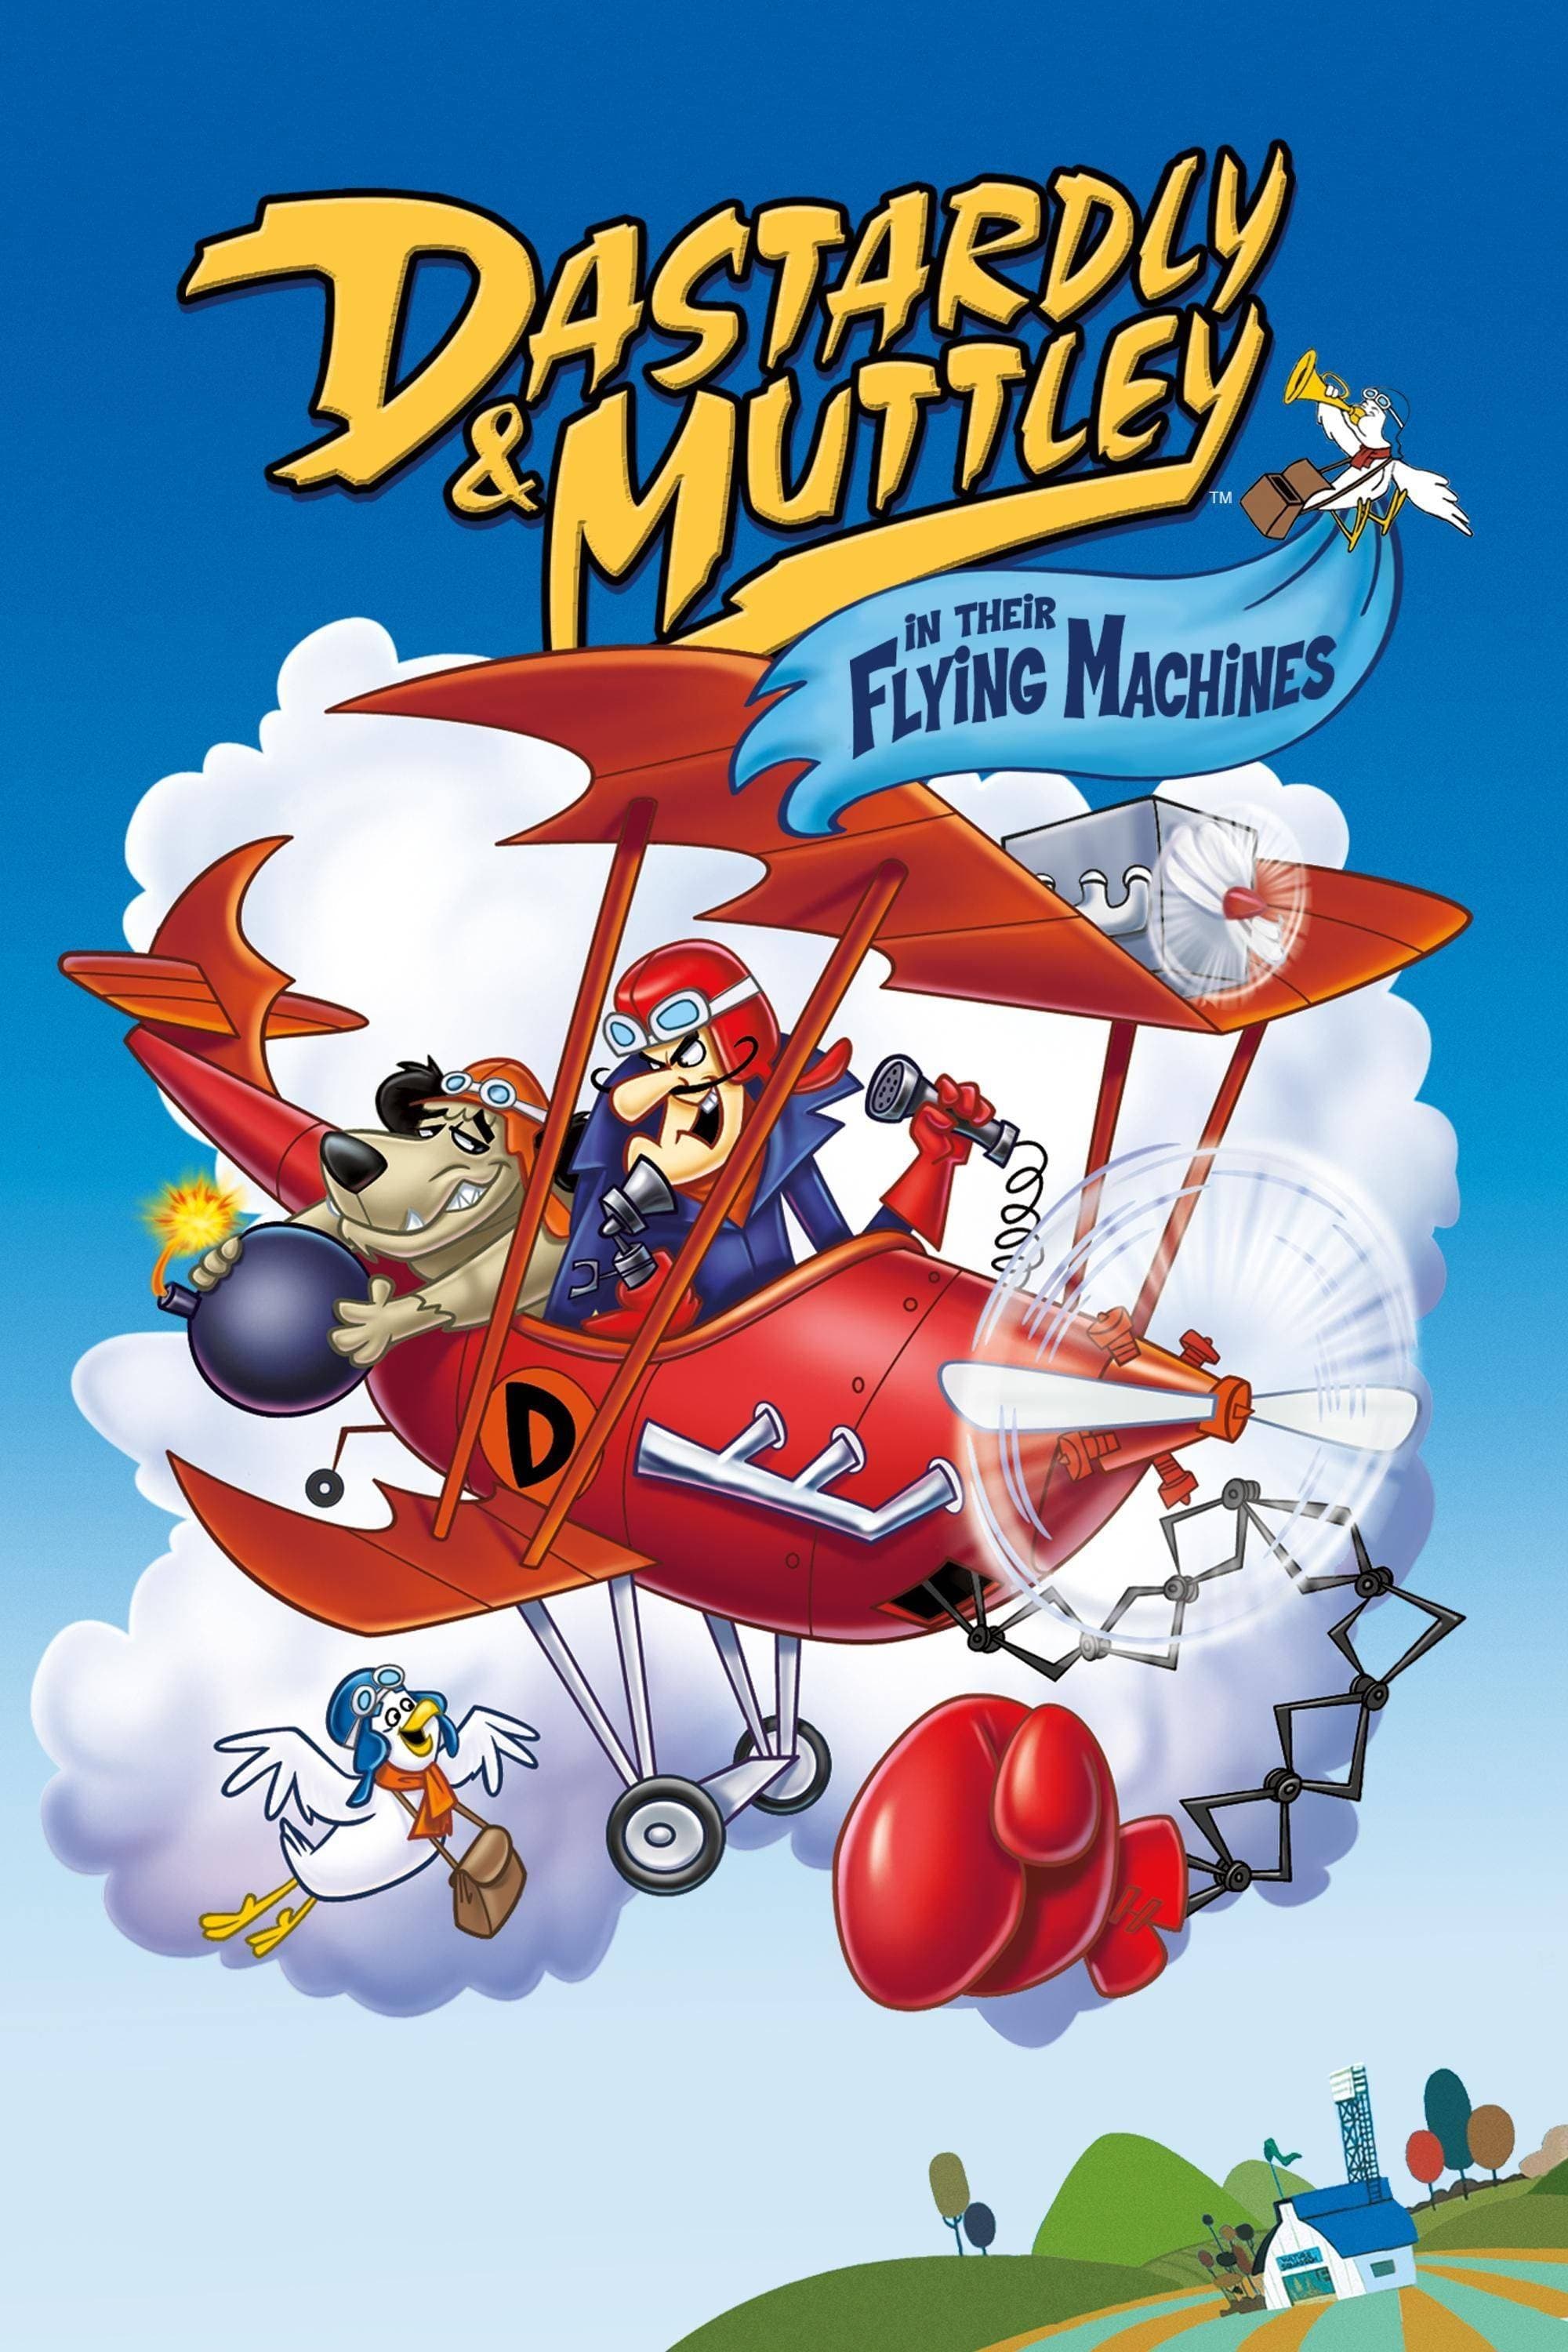 Las aventuras de Pierre Nodoyuna y Patán en sus máquinas voladoras (1969)